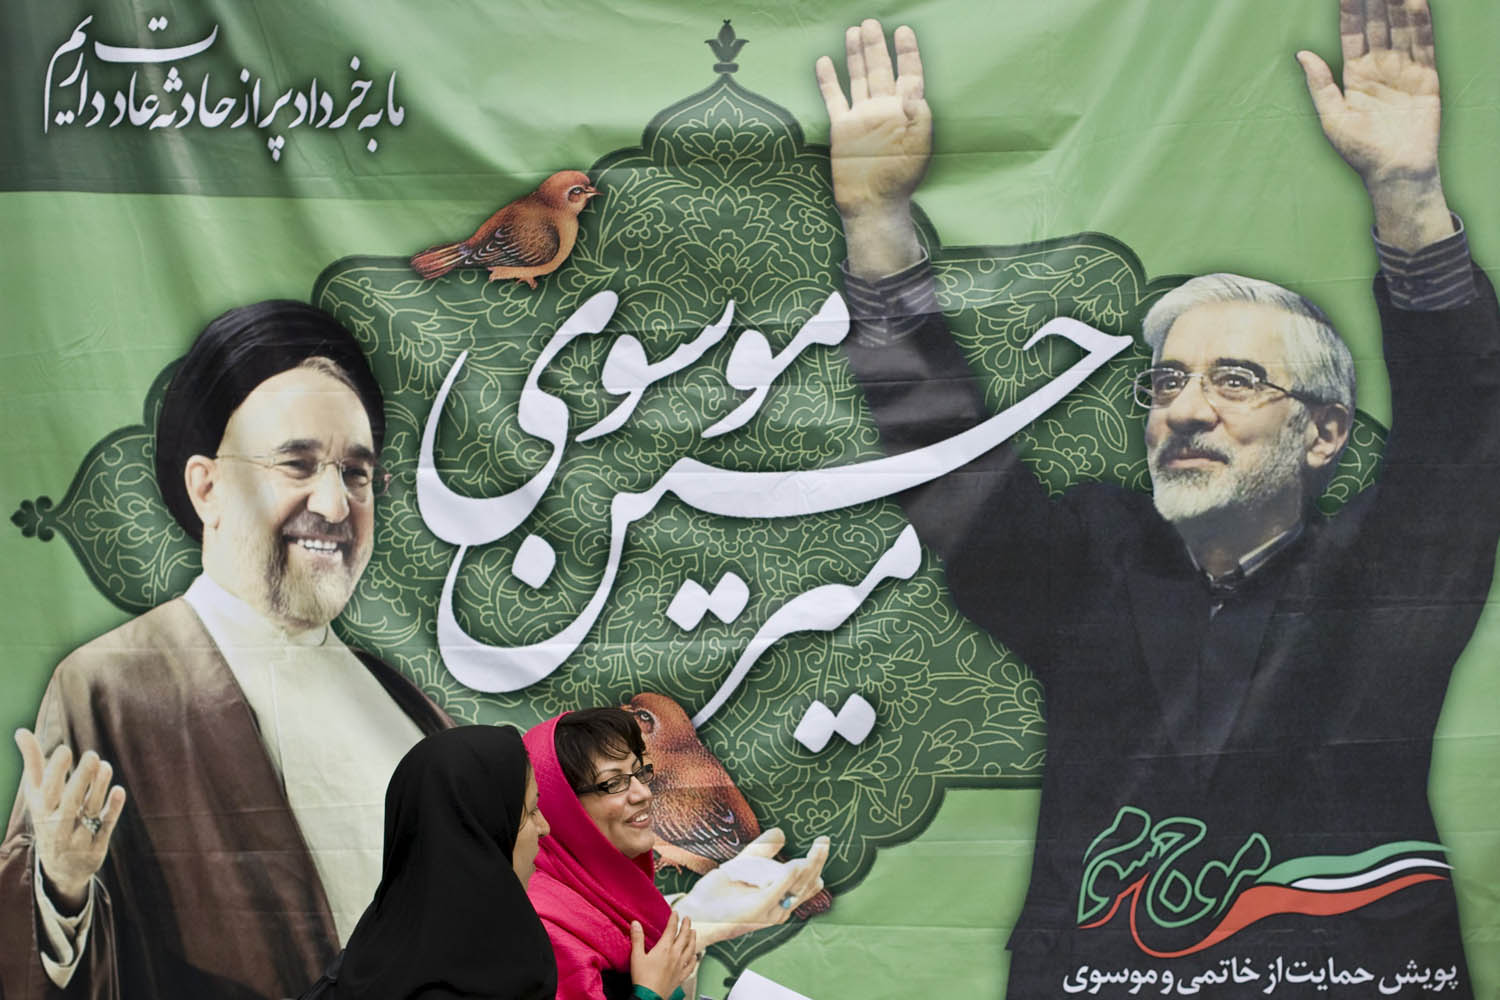 ملصق للرئيس الإيراني خاتمي ومرشح الاصلاح حسين موسوي في انتخابات 2009